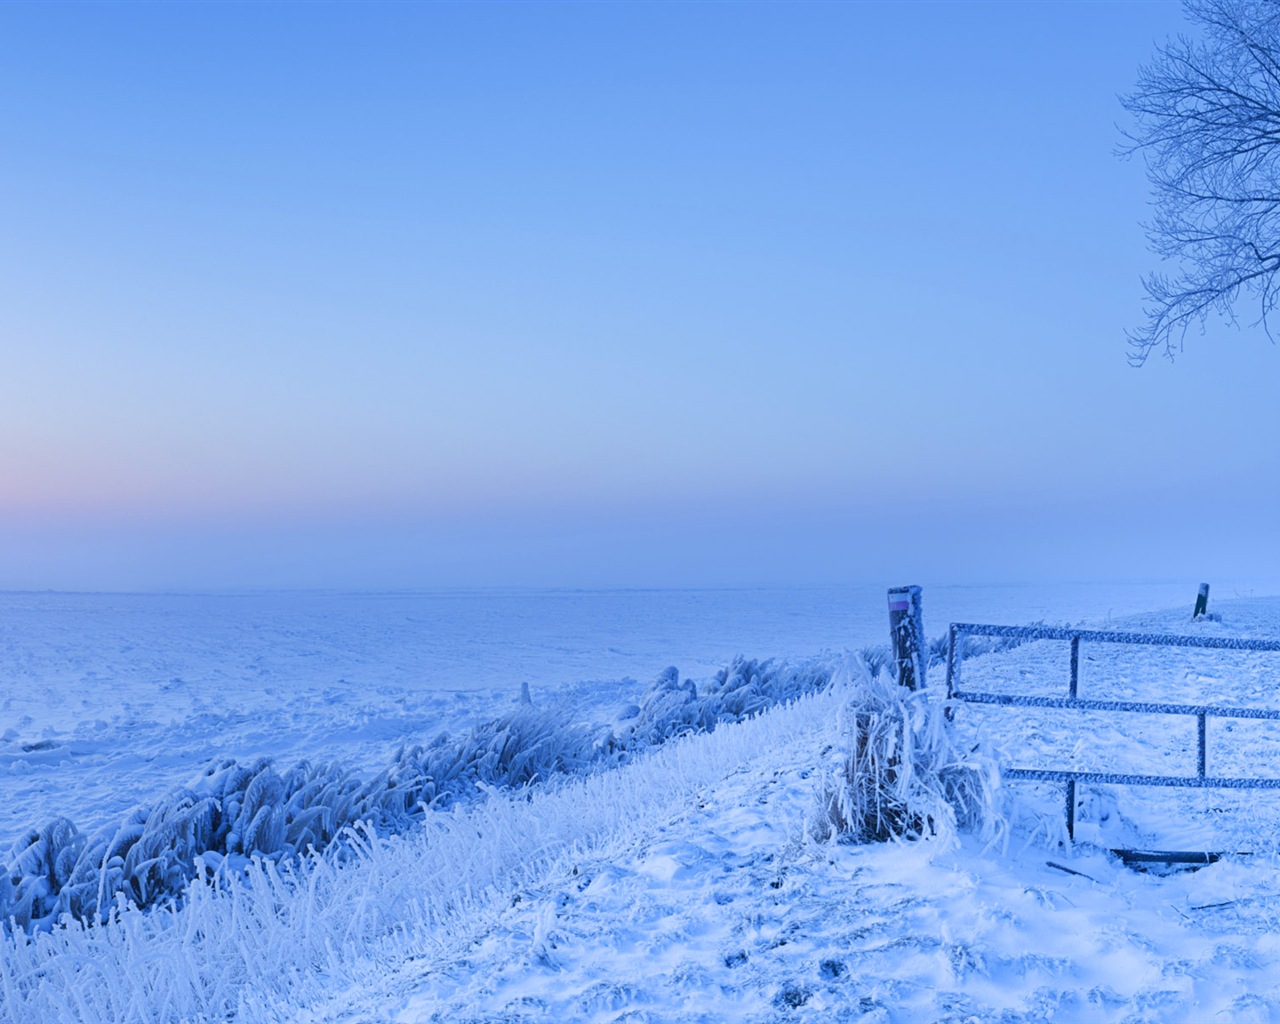 Belle neige froide d'hiver, de Windows 8 fonds d'écran widescreen panoramique #2 - 1280x1024